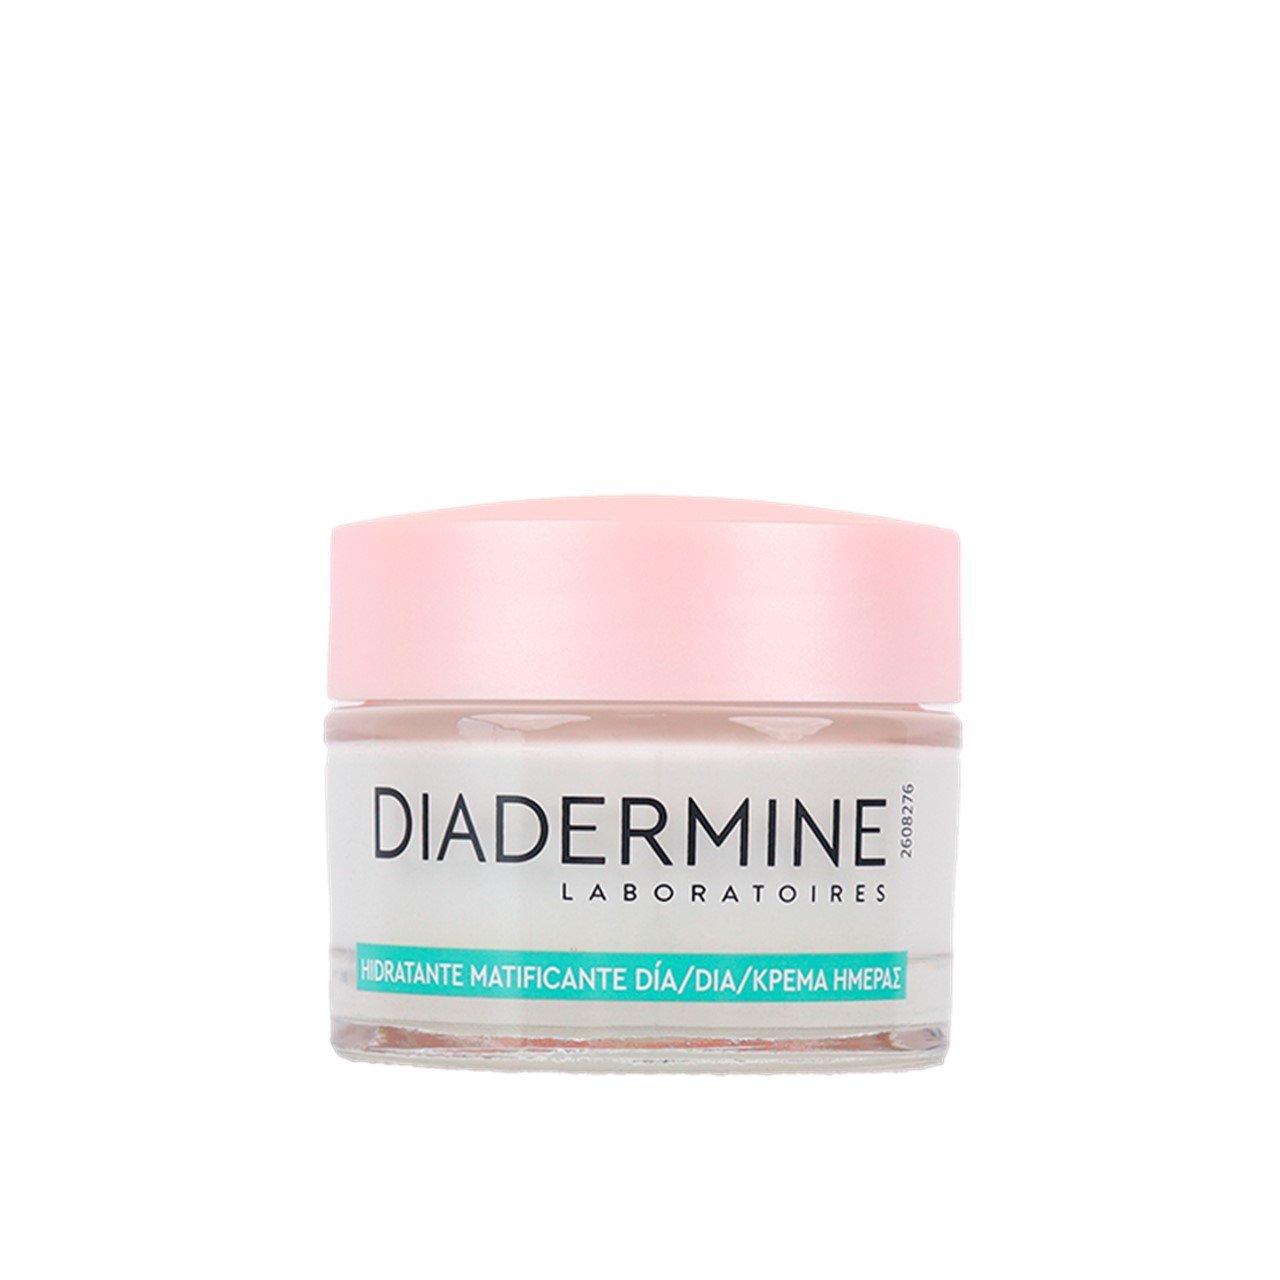 Diadermine Mattifying Moisturizing Day Cream 50ml (1.69fl oz)